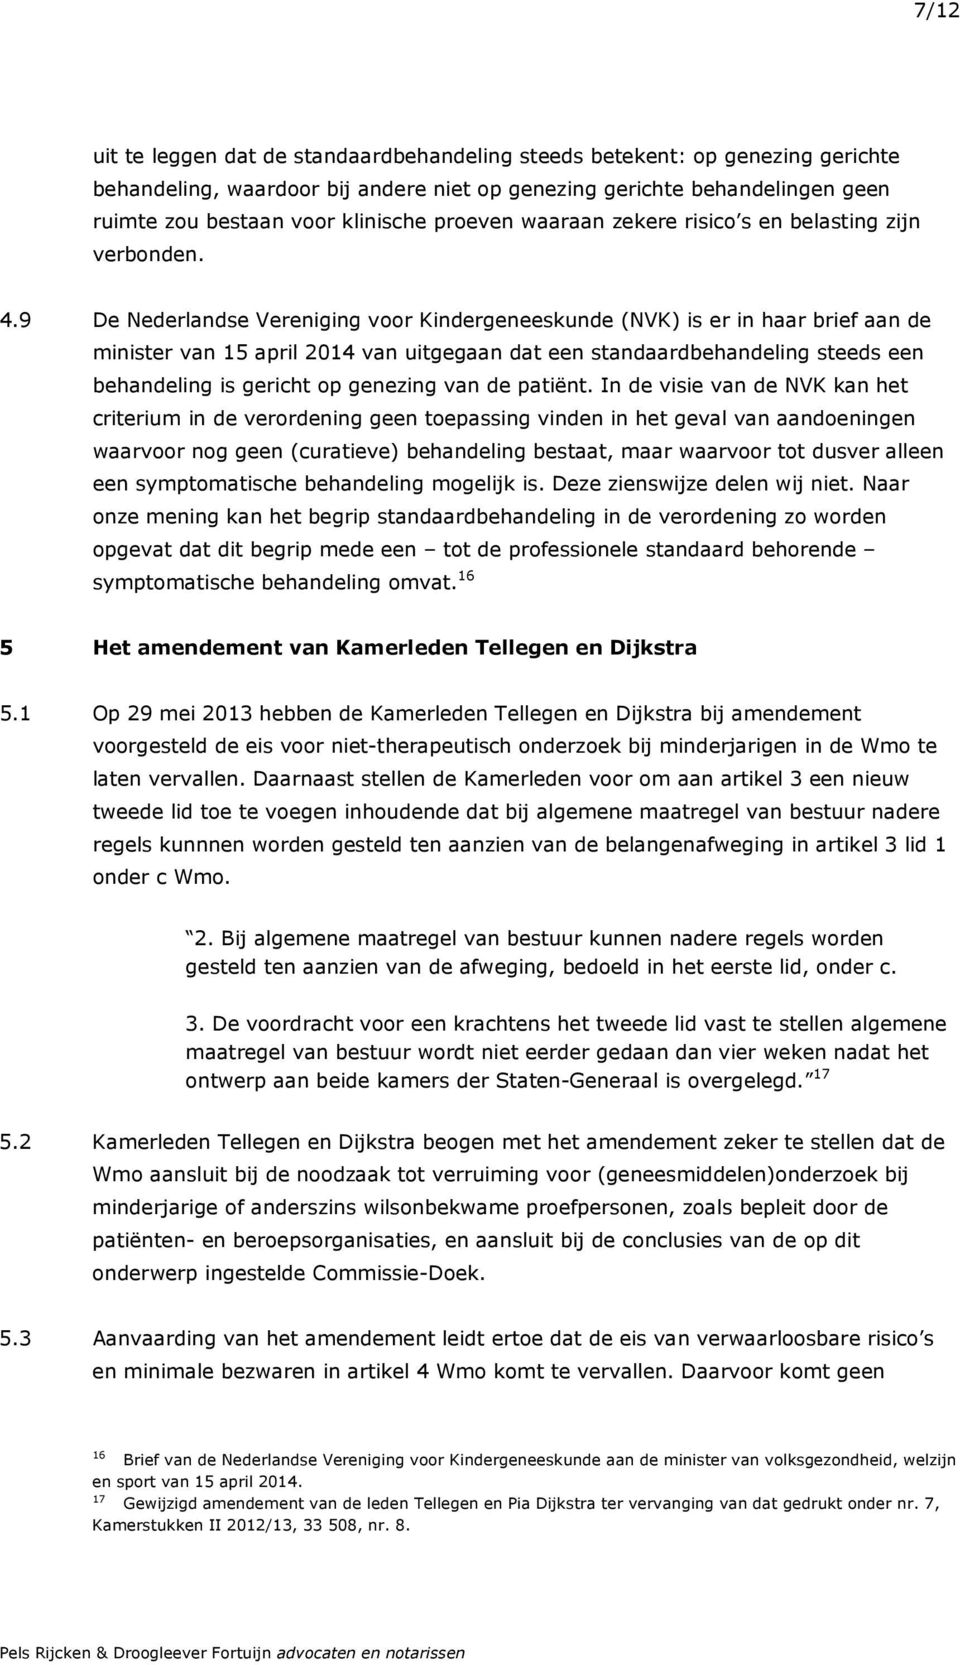 9 De Nederlandse Vereniging voor Kindergeneeskunde (NVK) is er in haar brief aan de minister van 15 april 2014 van uitgegaan dat een standaardbehandeling steeds een behandeling is gericht op genezing